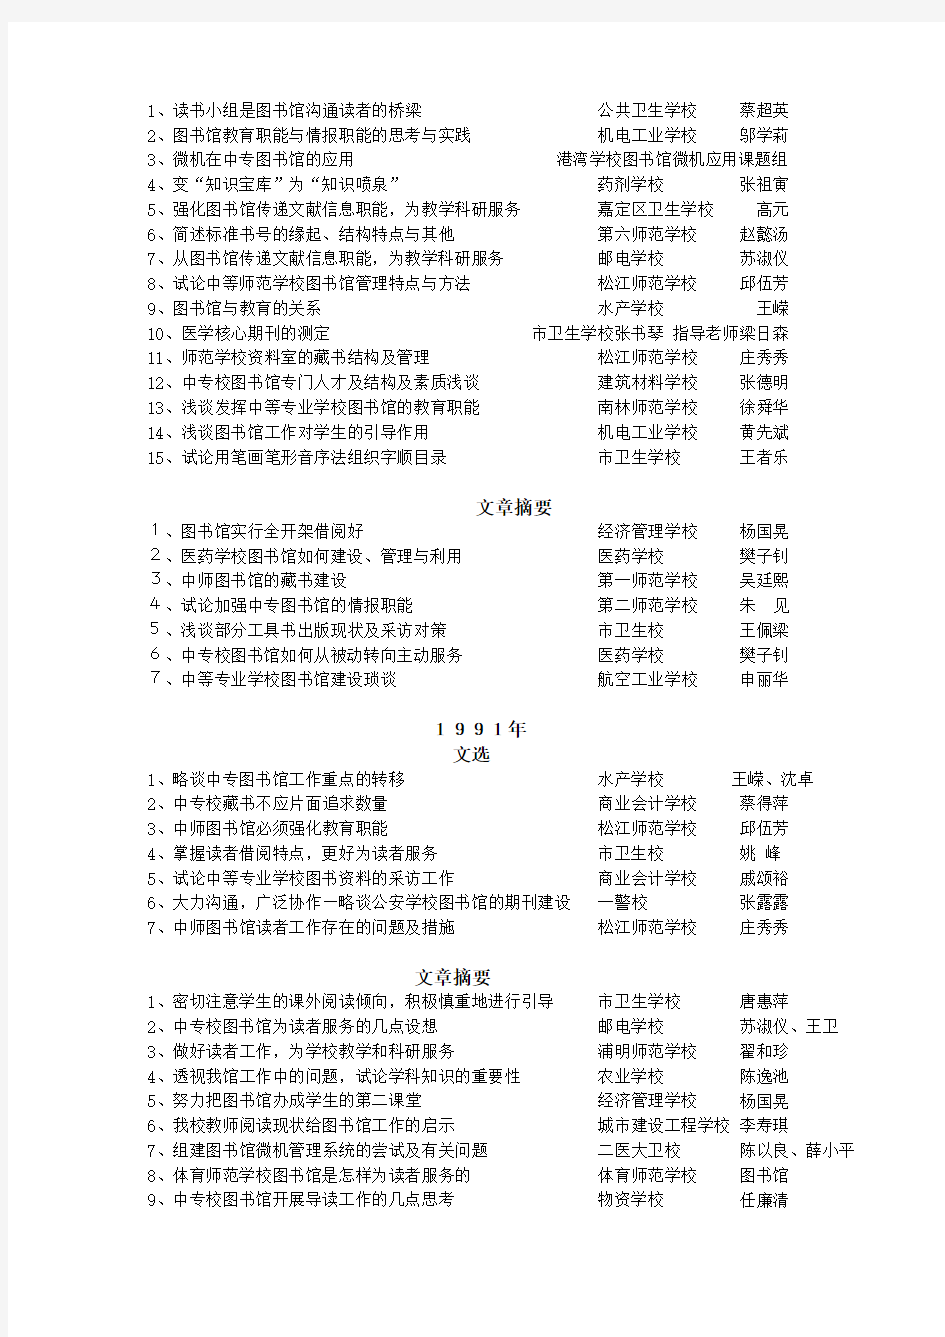 上海市中等专业学校图书馆工作论文集(1987-1995)